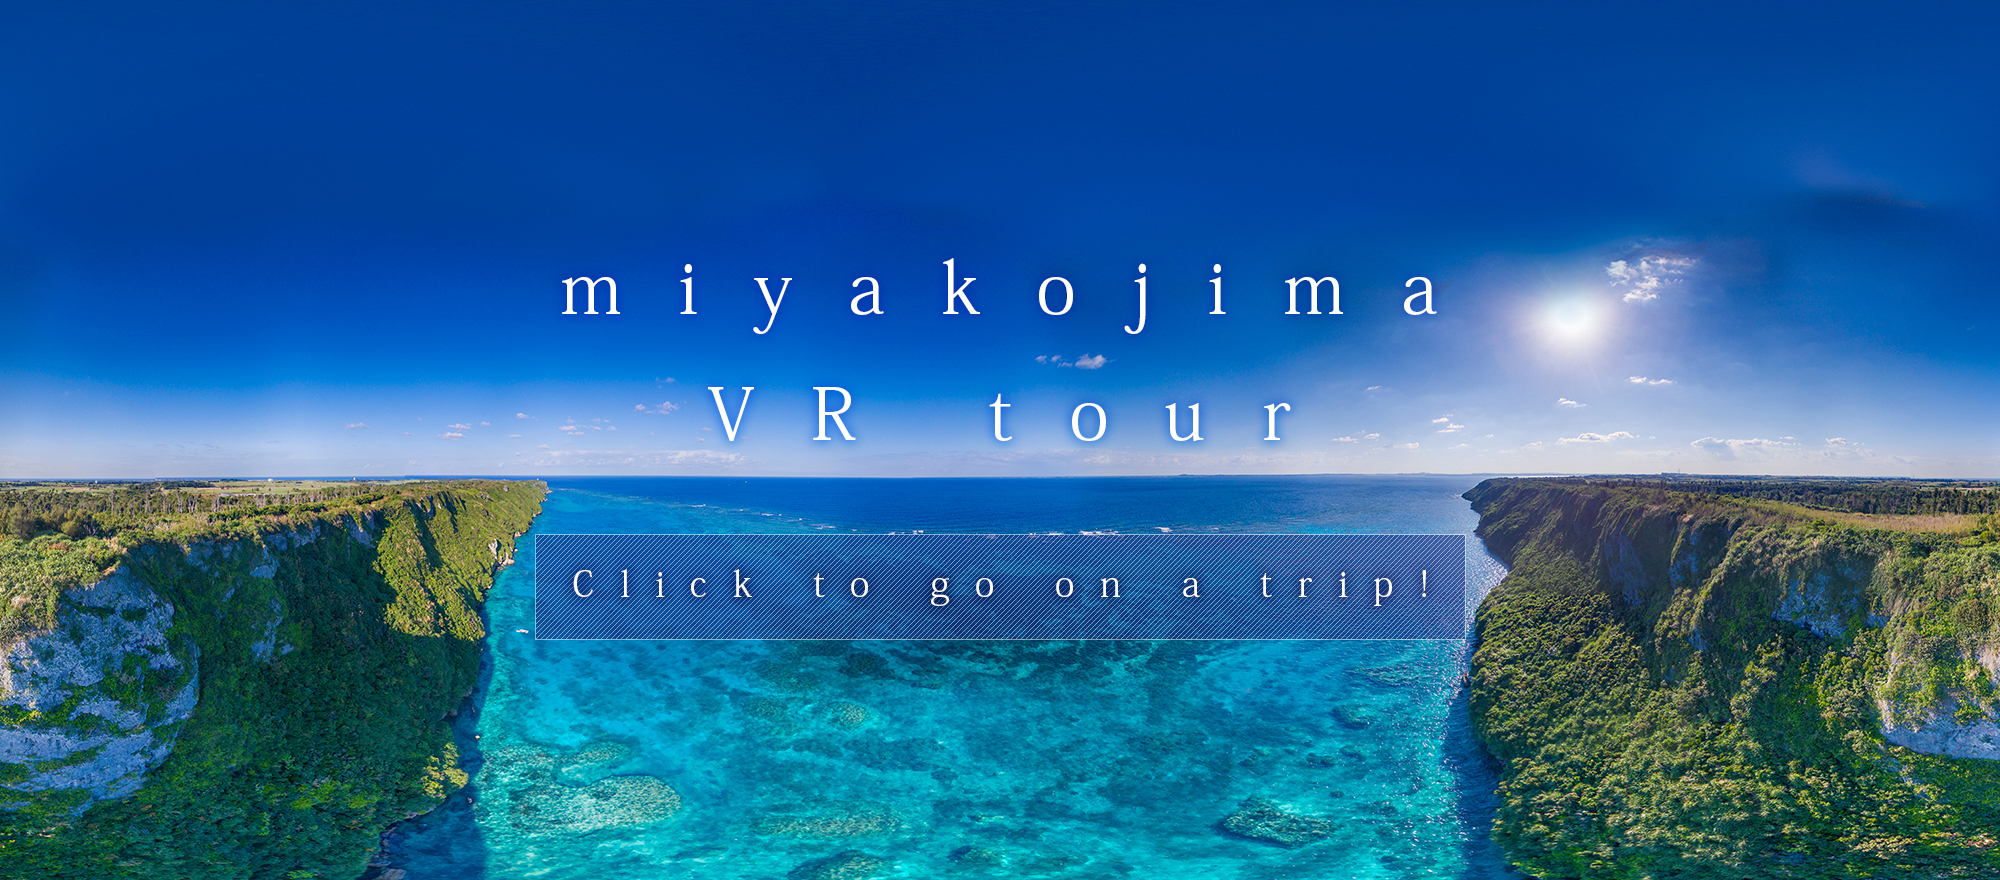 미야코 섬 VR 투어 (가상 현실 투어)